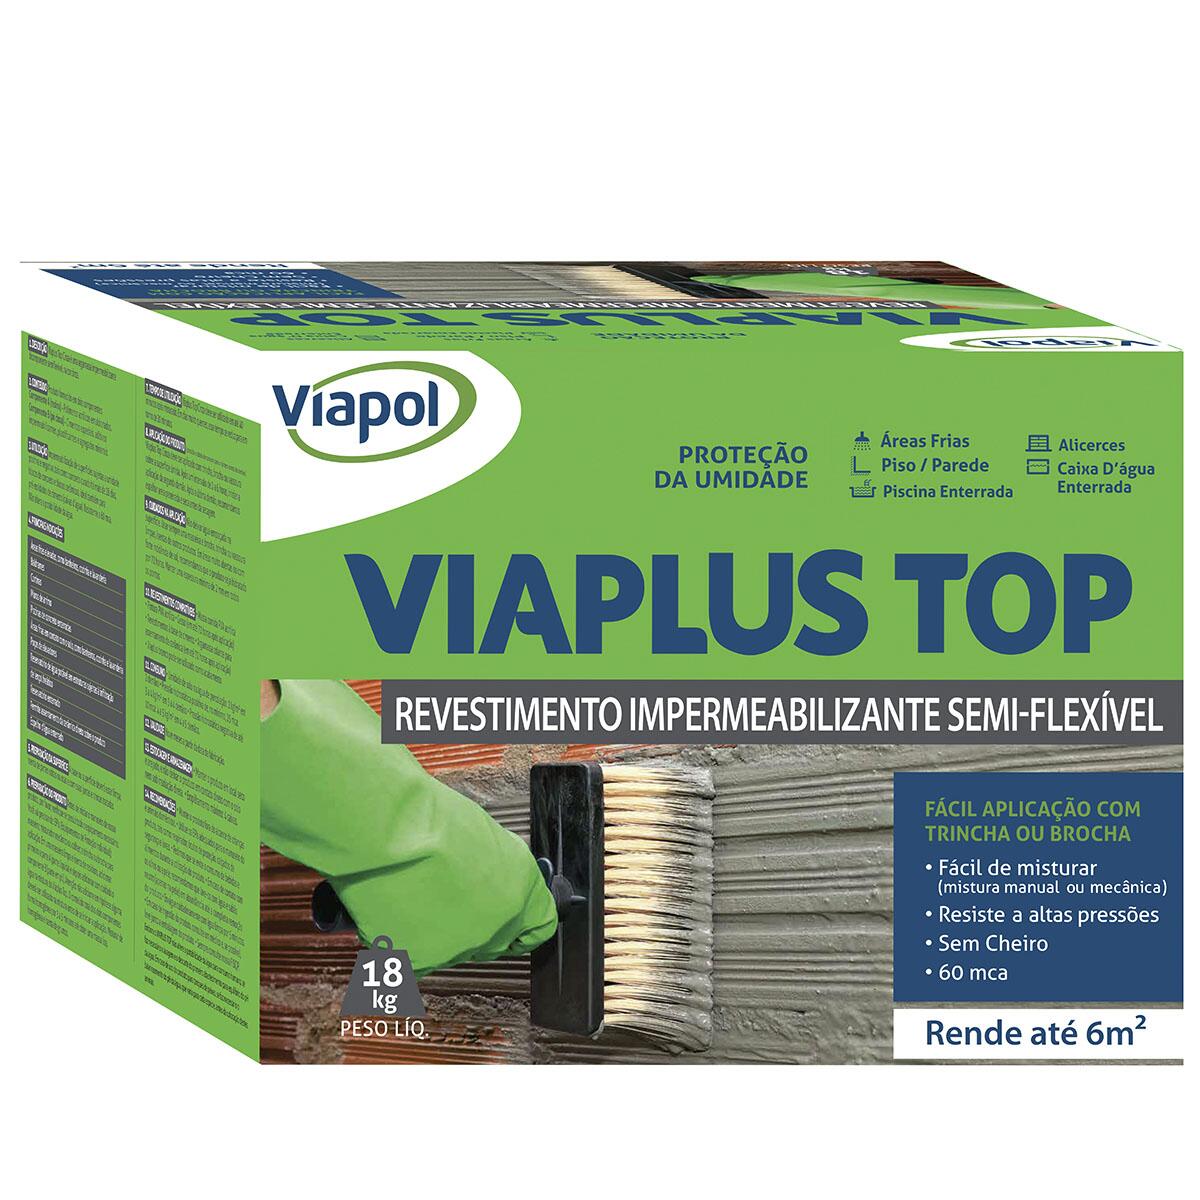 Revestimento Impermeabilizante Semi-Flexível Viaplus Top 18Kg Viapol